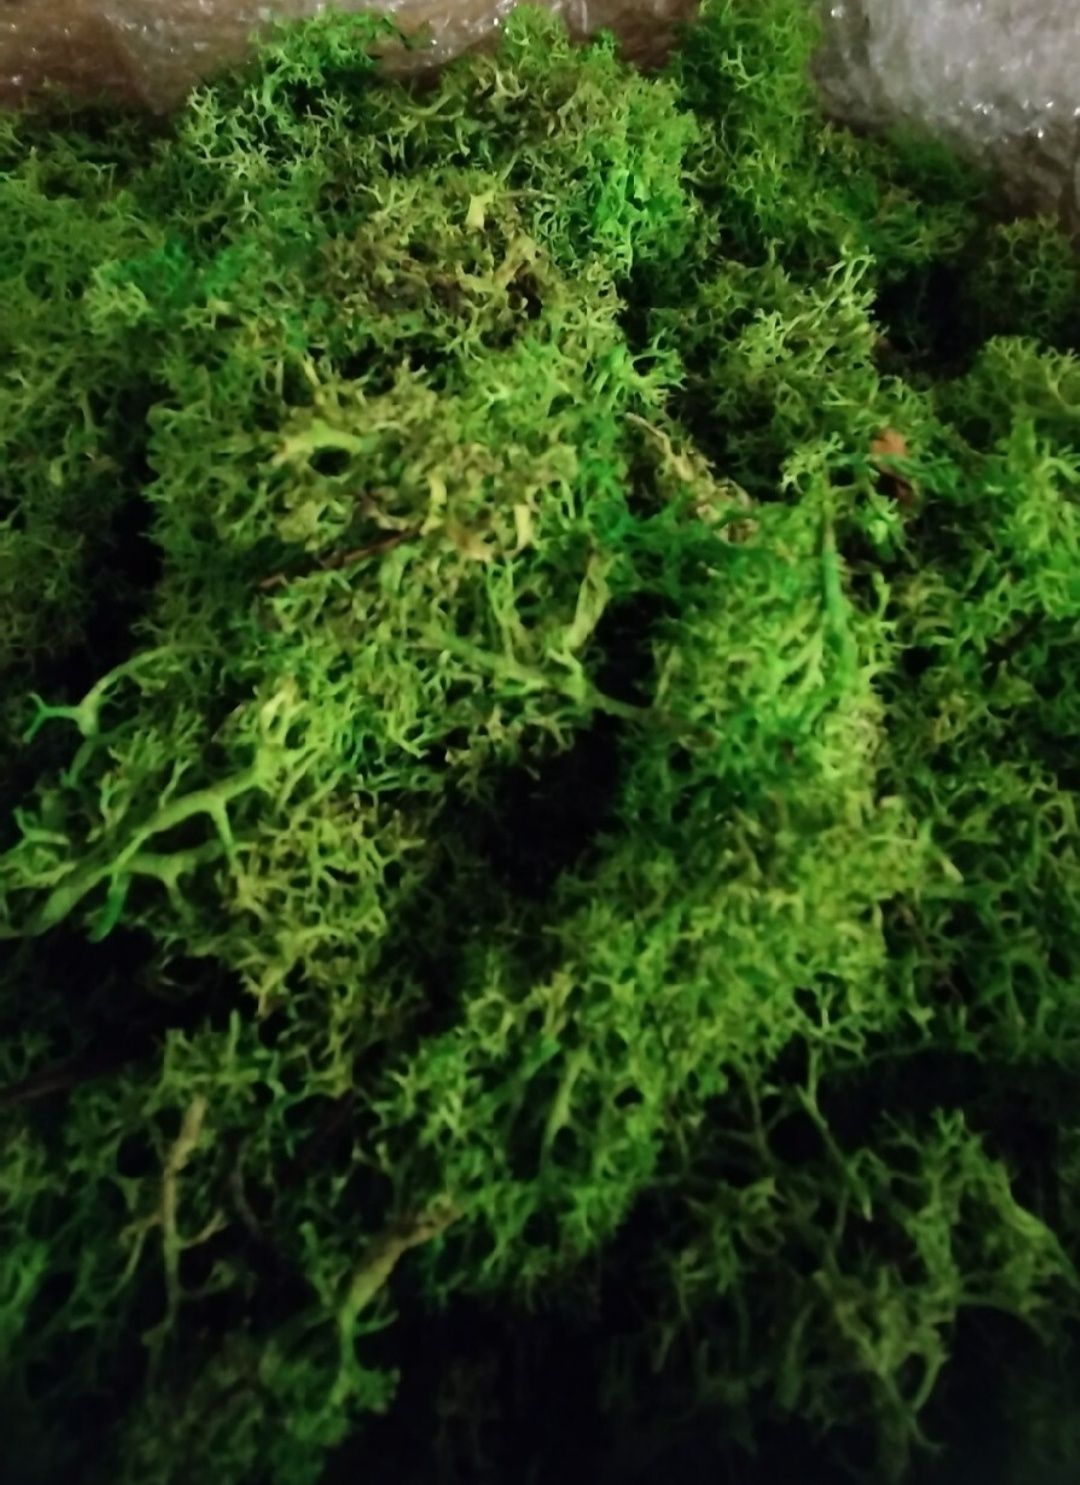 Duża paczka 400g MECH CHROBOTEK reniferowy zielony